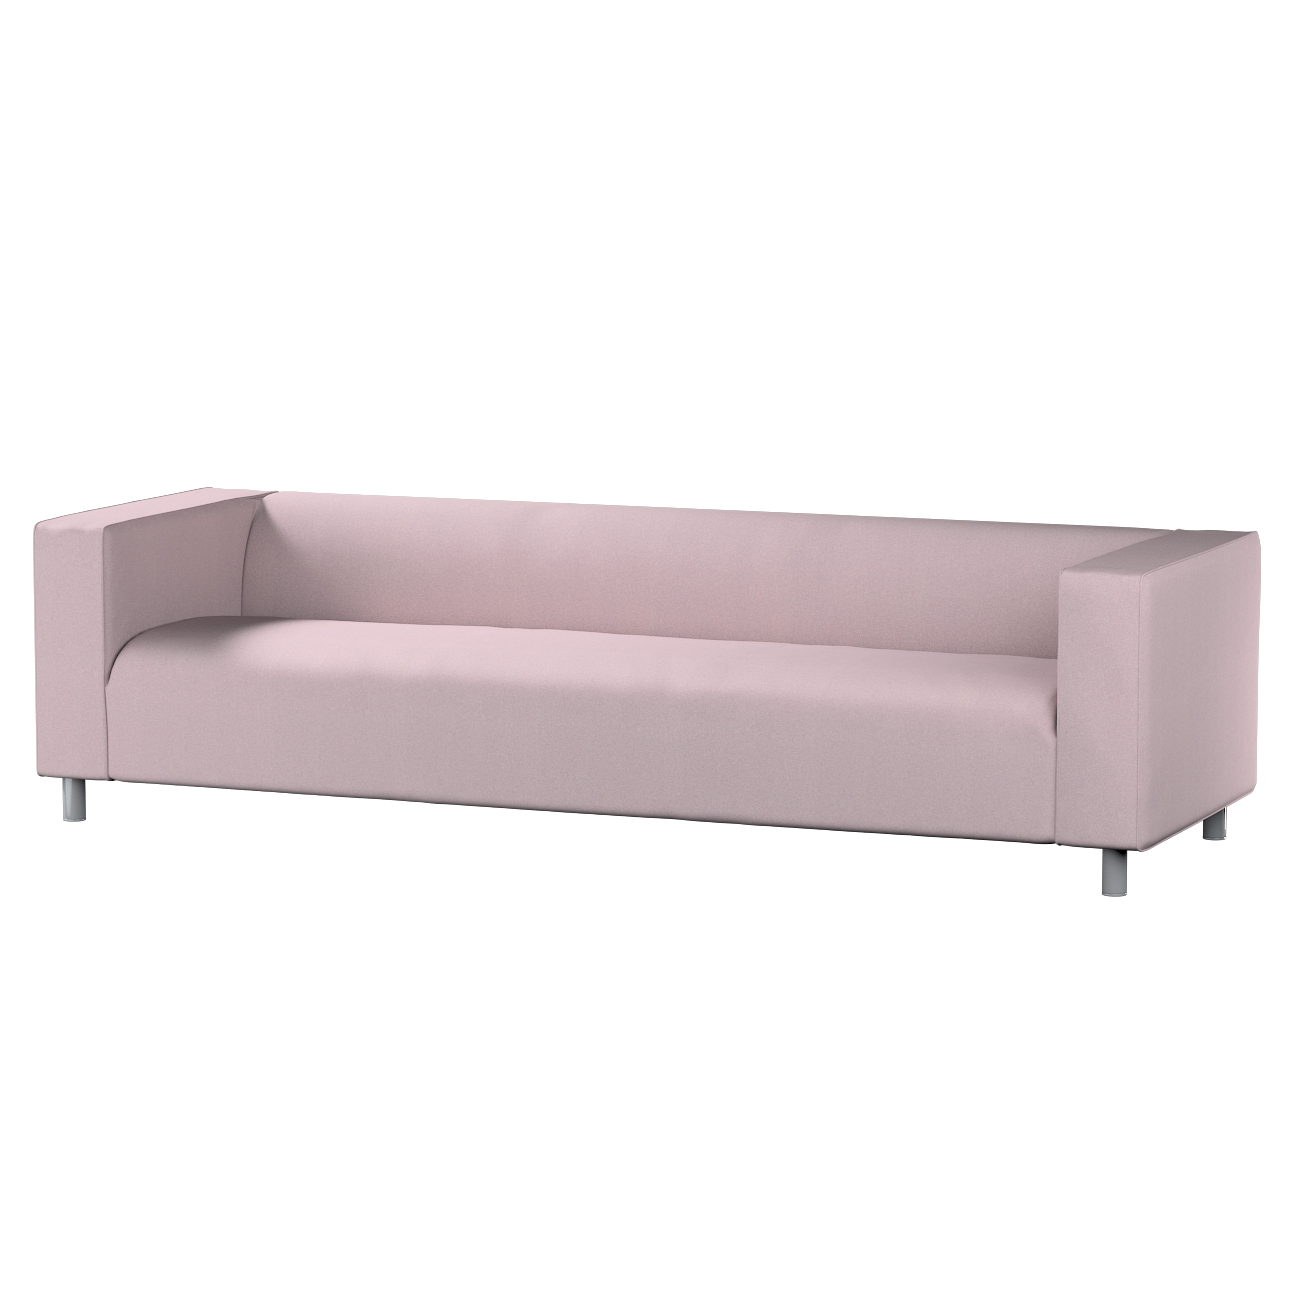 Bezug für Klippan 4-Sitzer Sofa, rosa, Bezug für Klippan 4-Sitzer, Amsterda günstig online kaufen